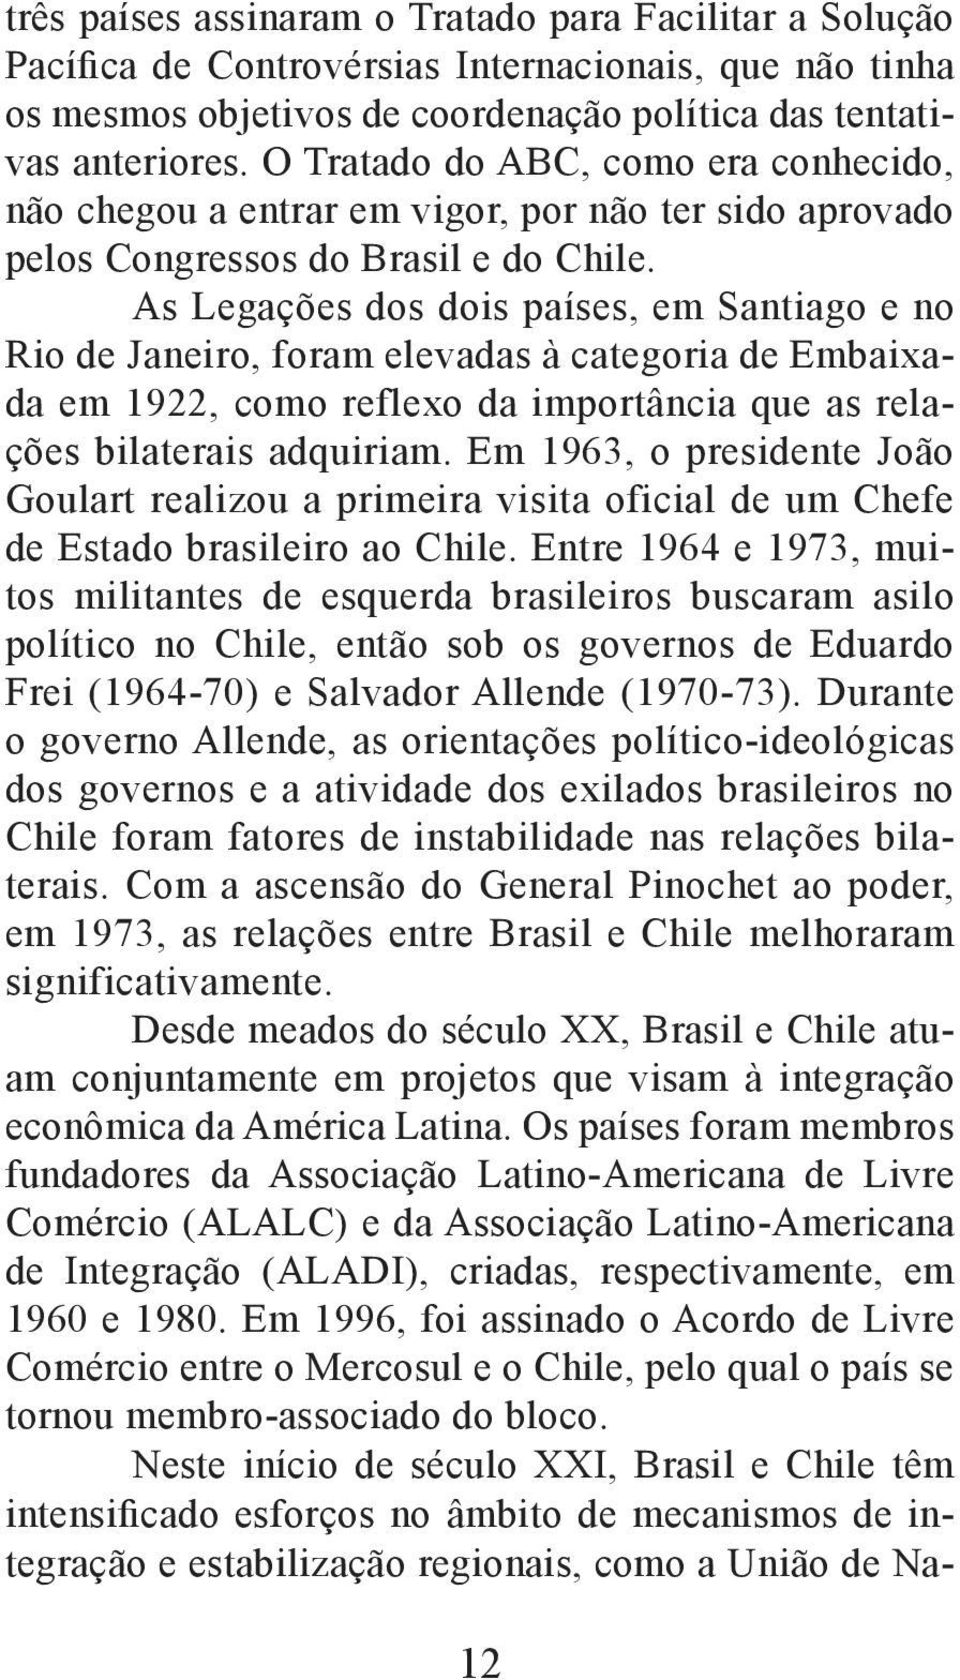 As Legações dos dois países, em Santiago e no Rio de Janeiro, foram elevadas à categoria de Embaixada em 1922, como reflexo da importância que as relações bilaterais adquiriam.